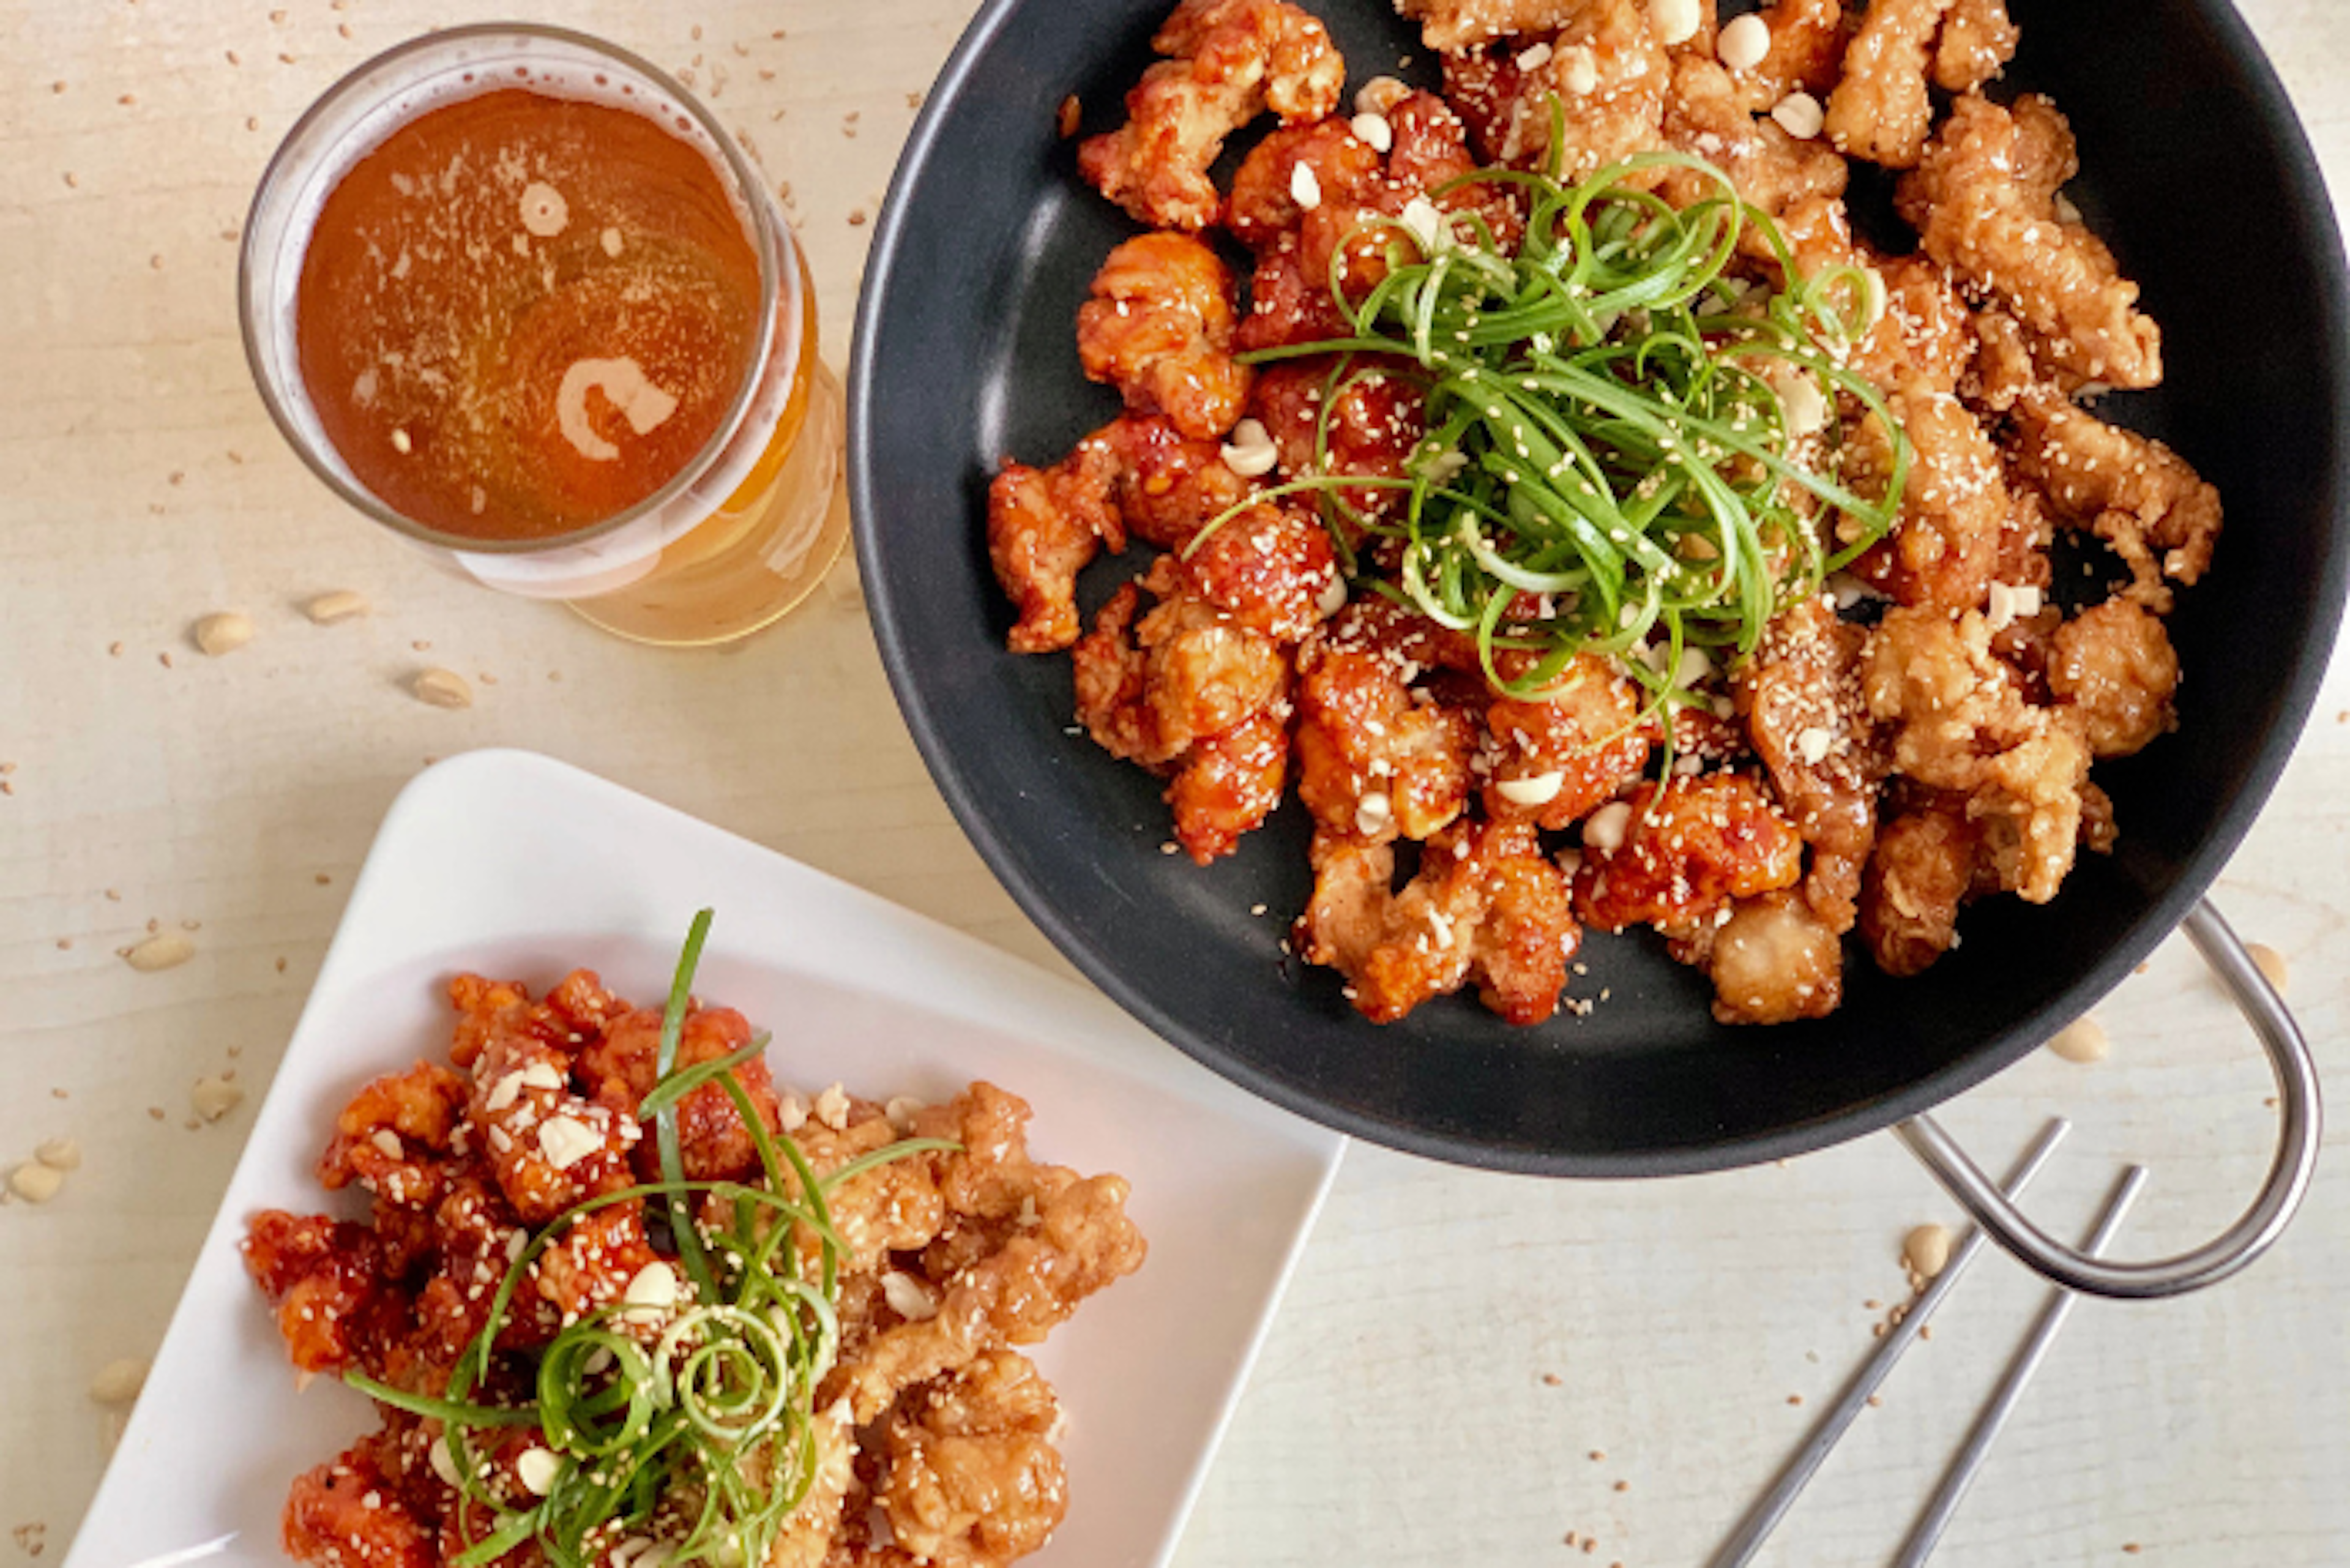 Veggie Dakgangjeong: Fleischfreies süßes und würziges koreanisches gebratenes Hühnchen